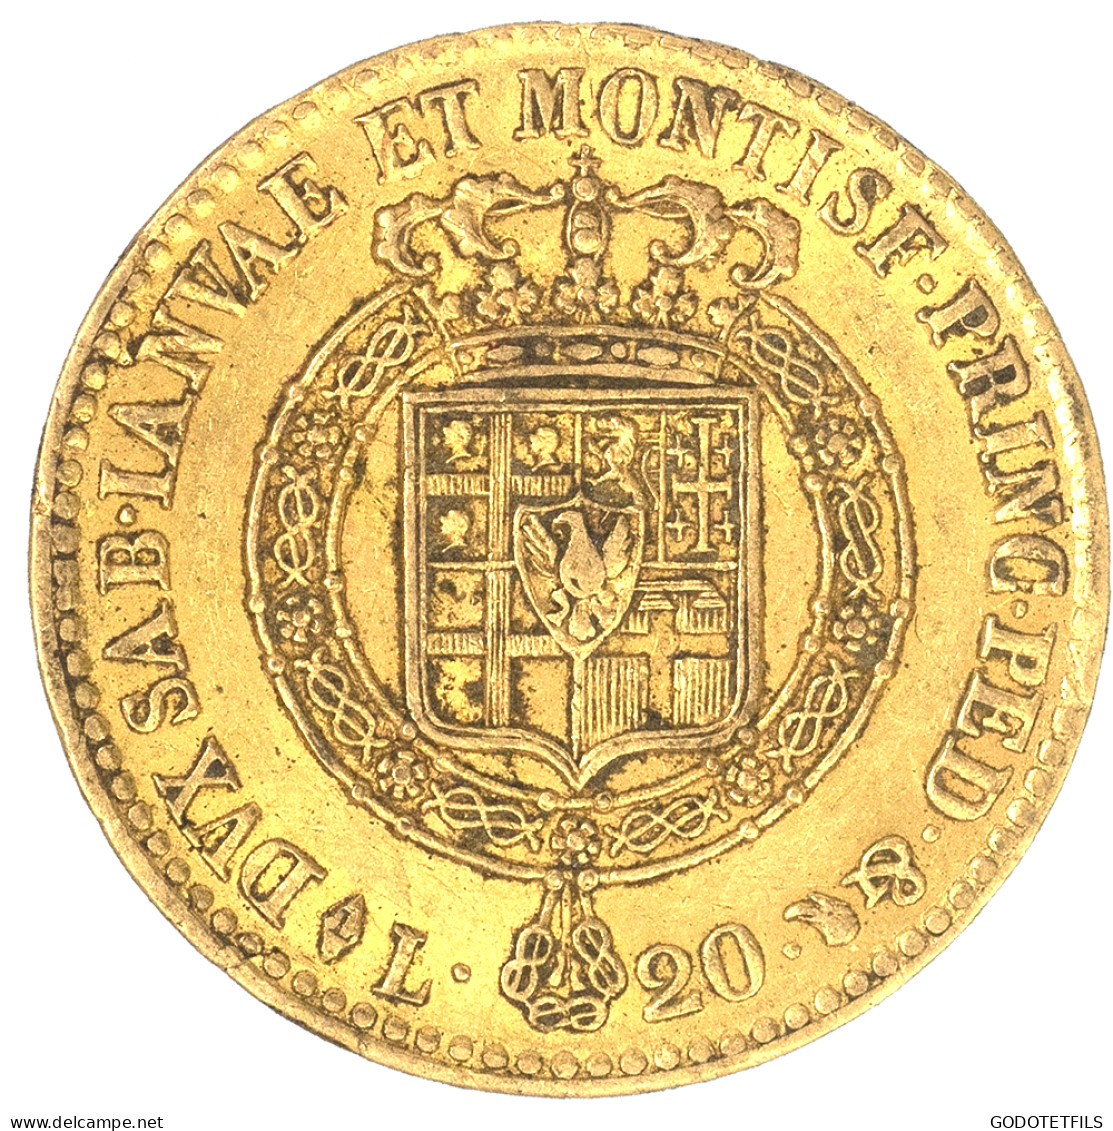 Italie-Victor Emmanuel I-20 Lire 1820 Turin - Piémont-Sardaigne-Savoie Italienne